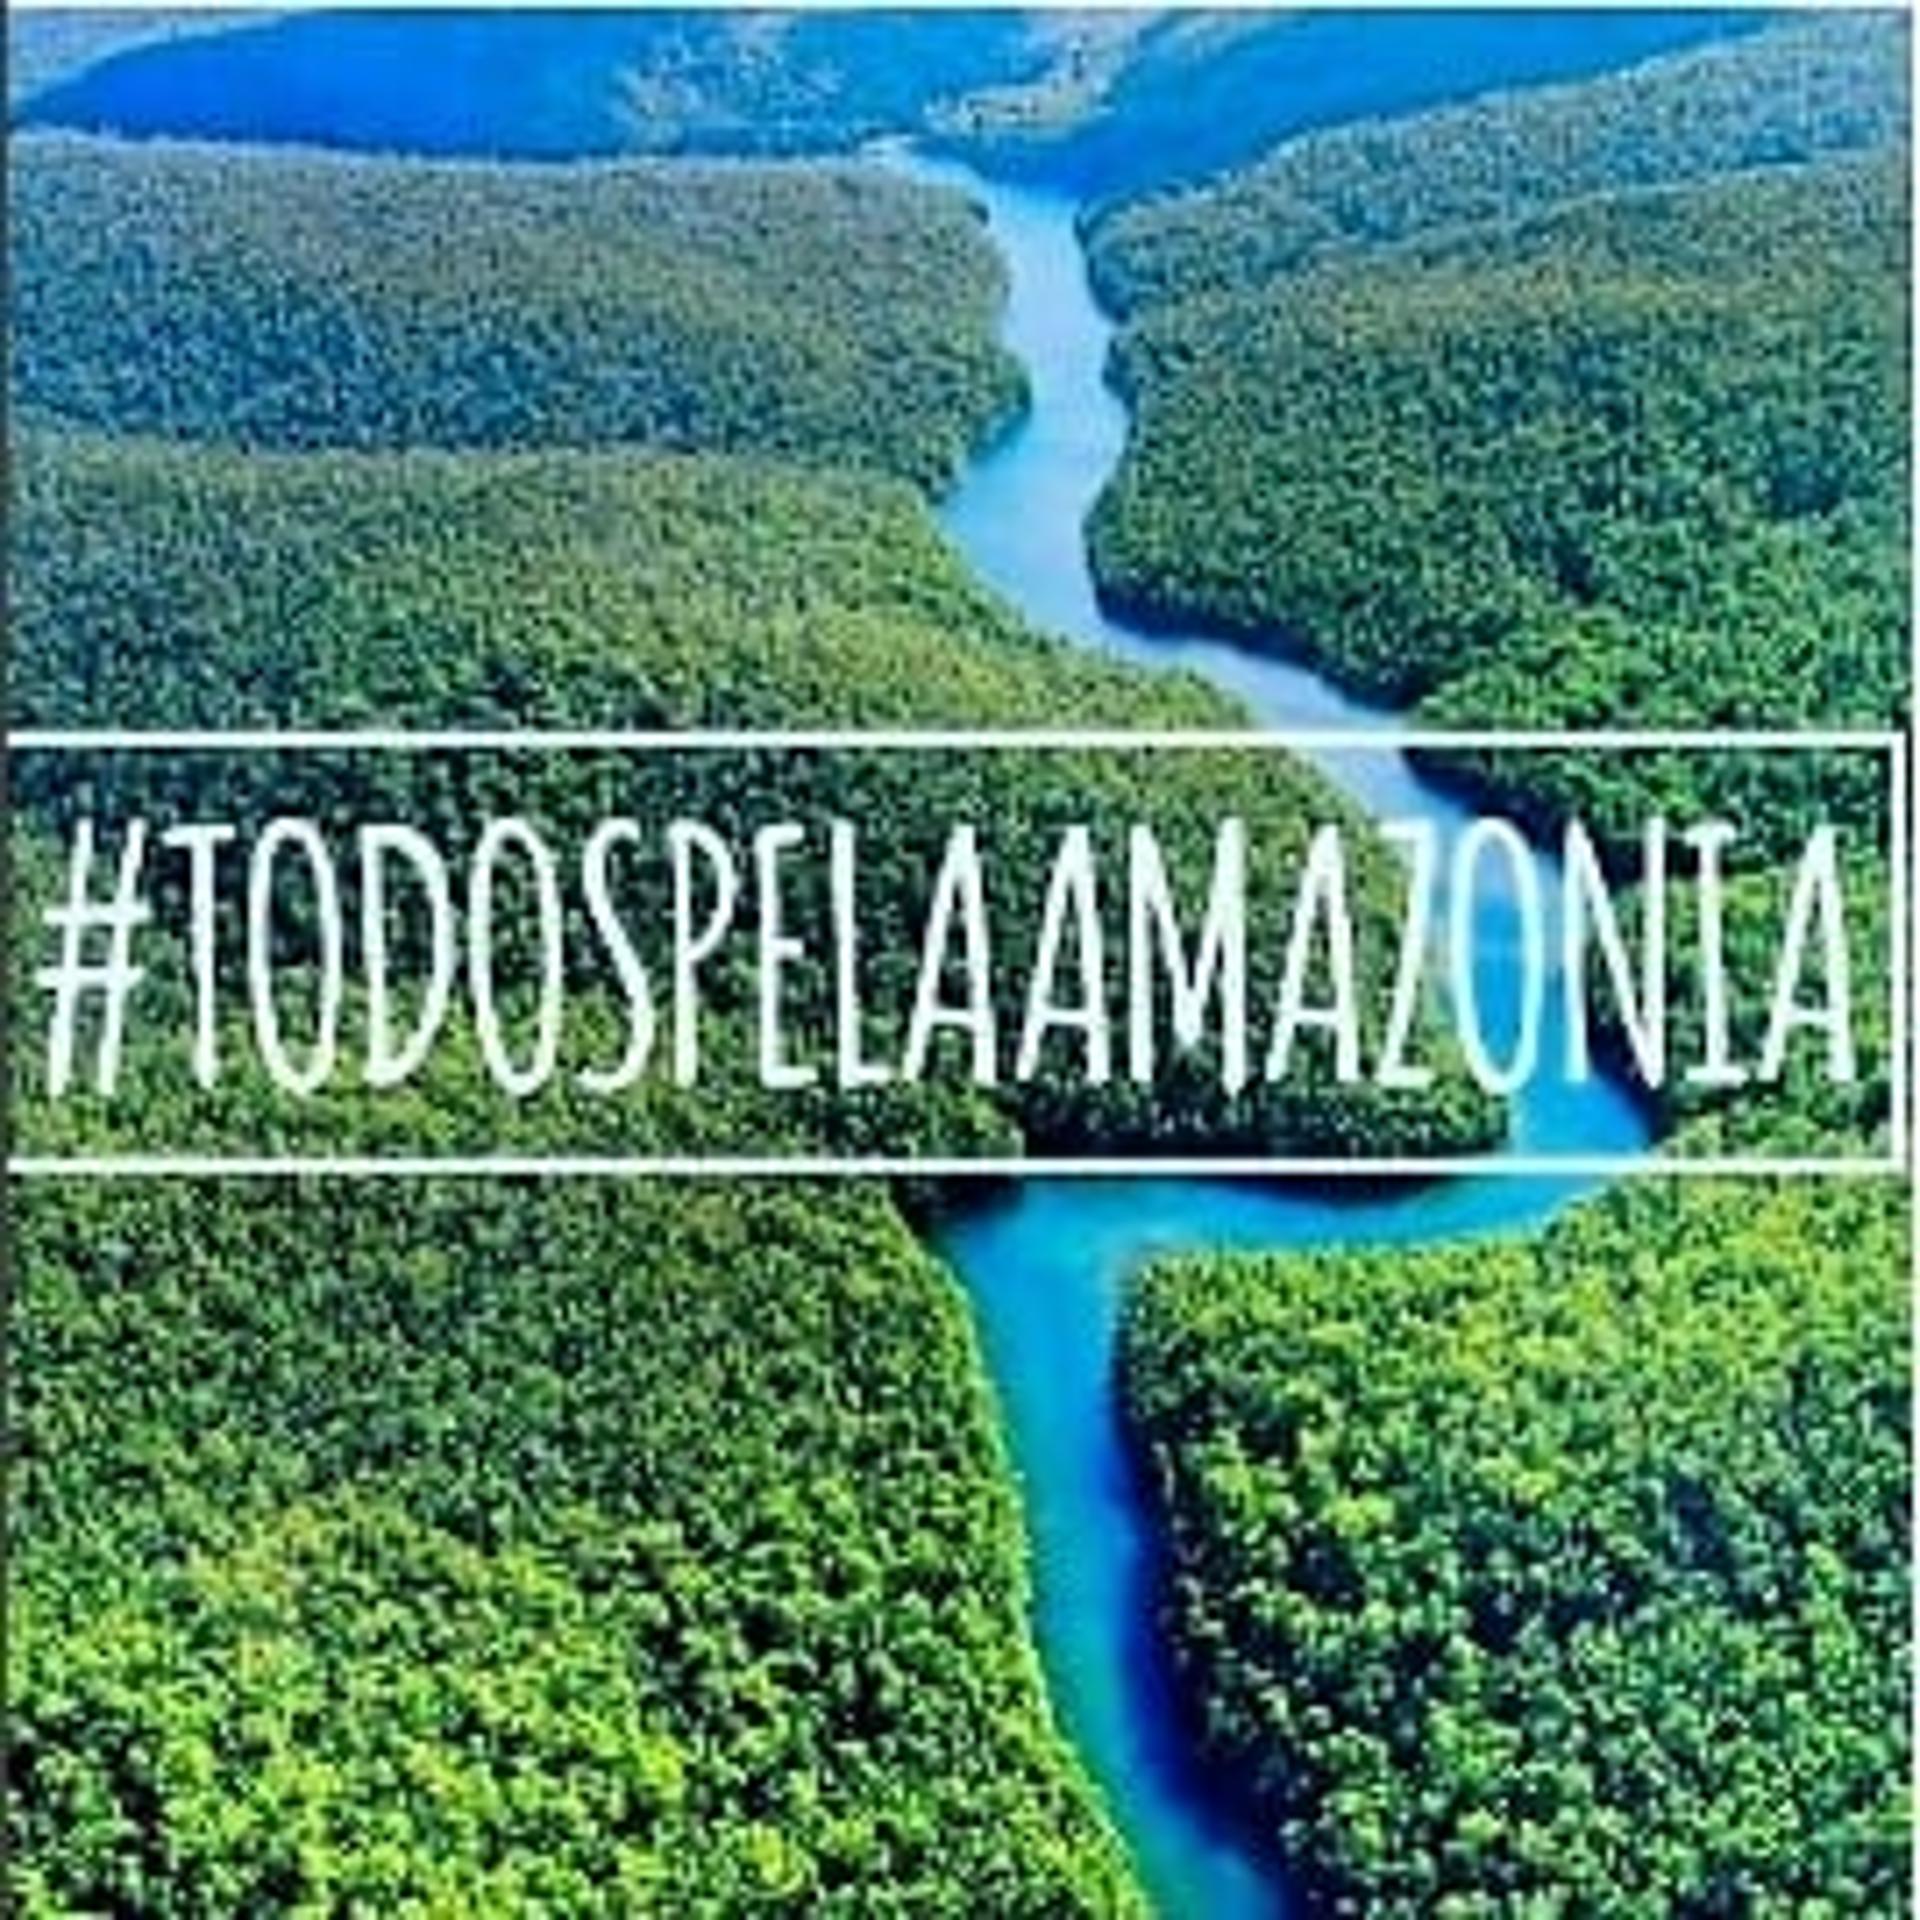 Em carta publicada no Instagram, Daniel Alves pede pela Amazônia